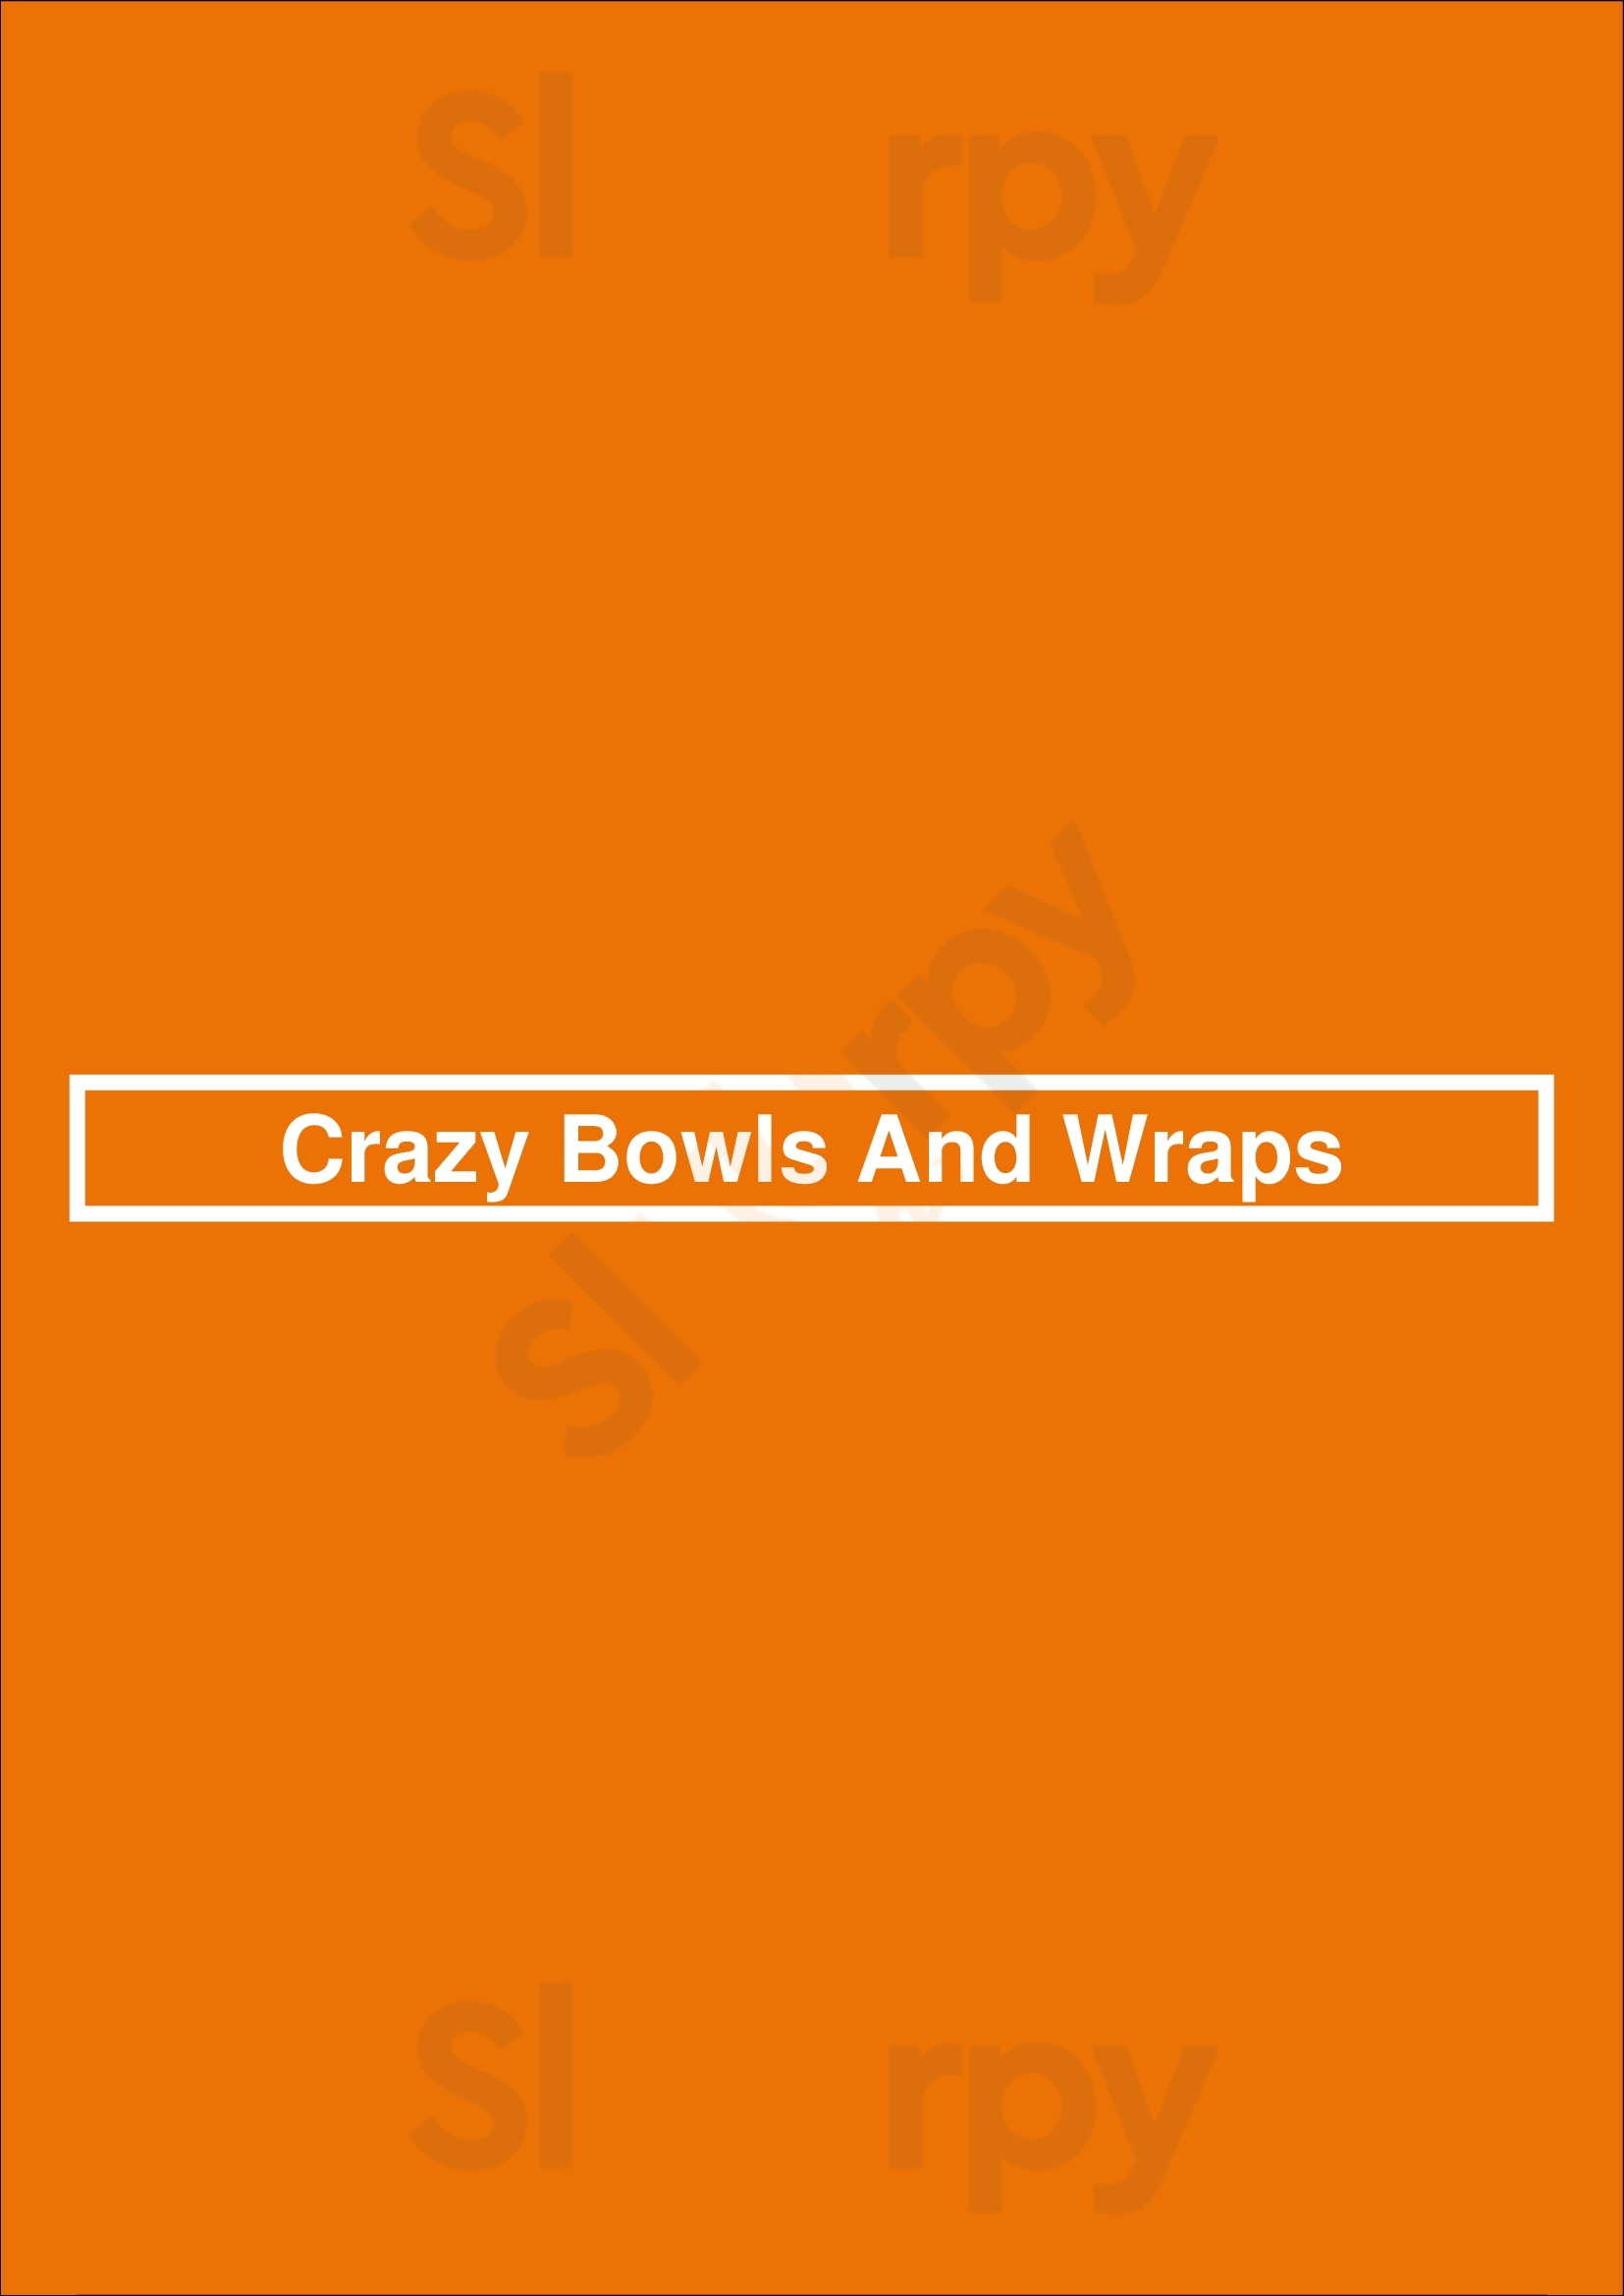 Crazy Bowls And Wraps Shiloh Menu - 1